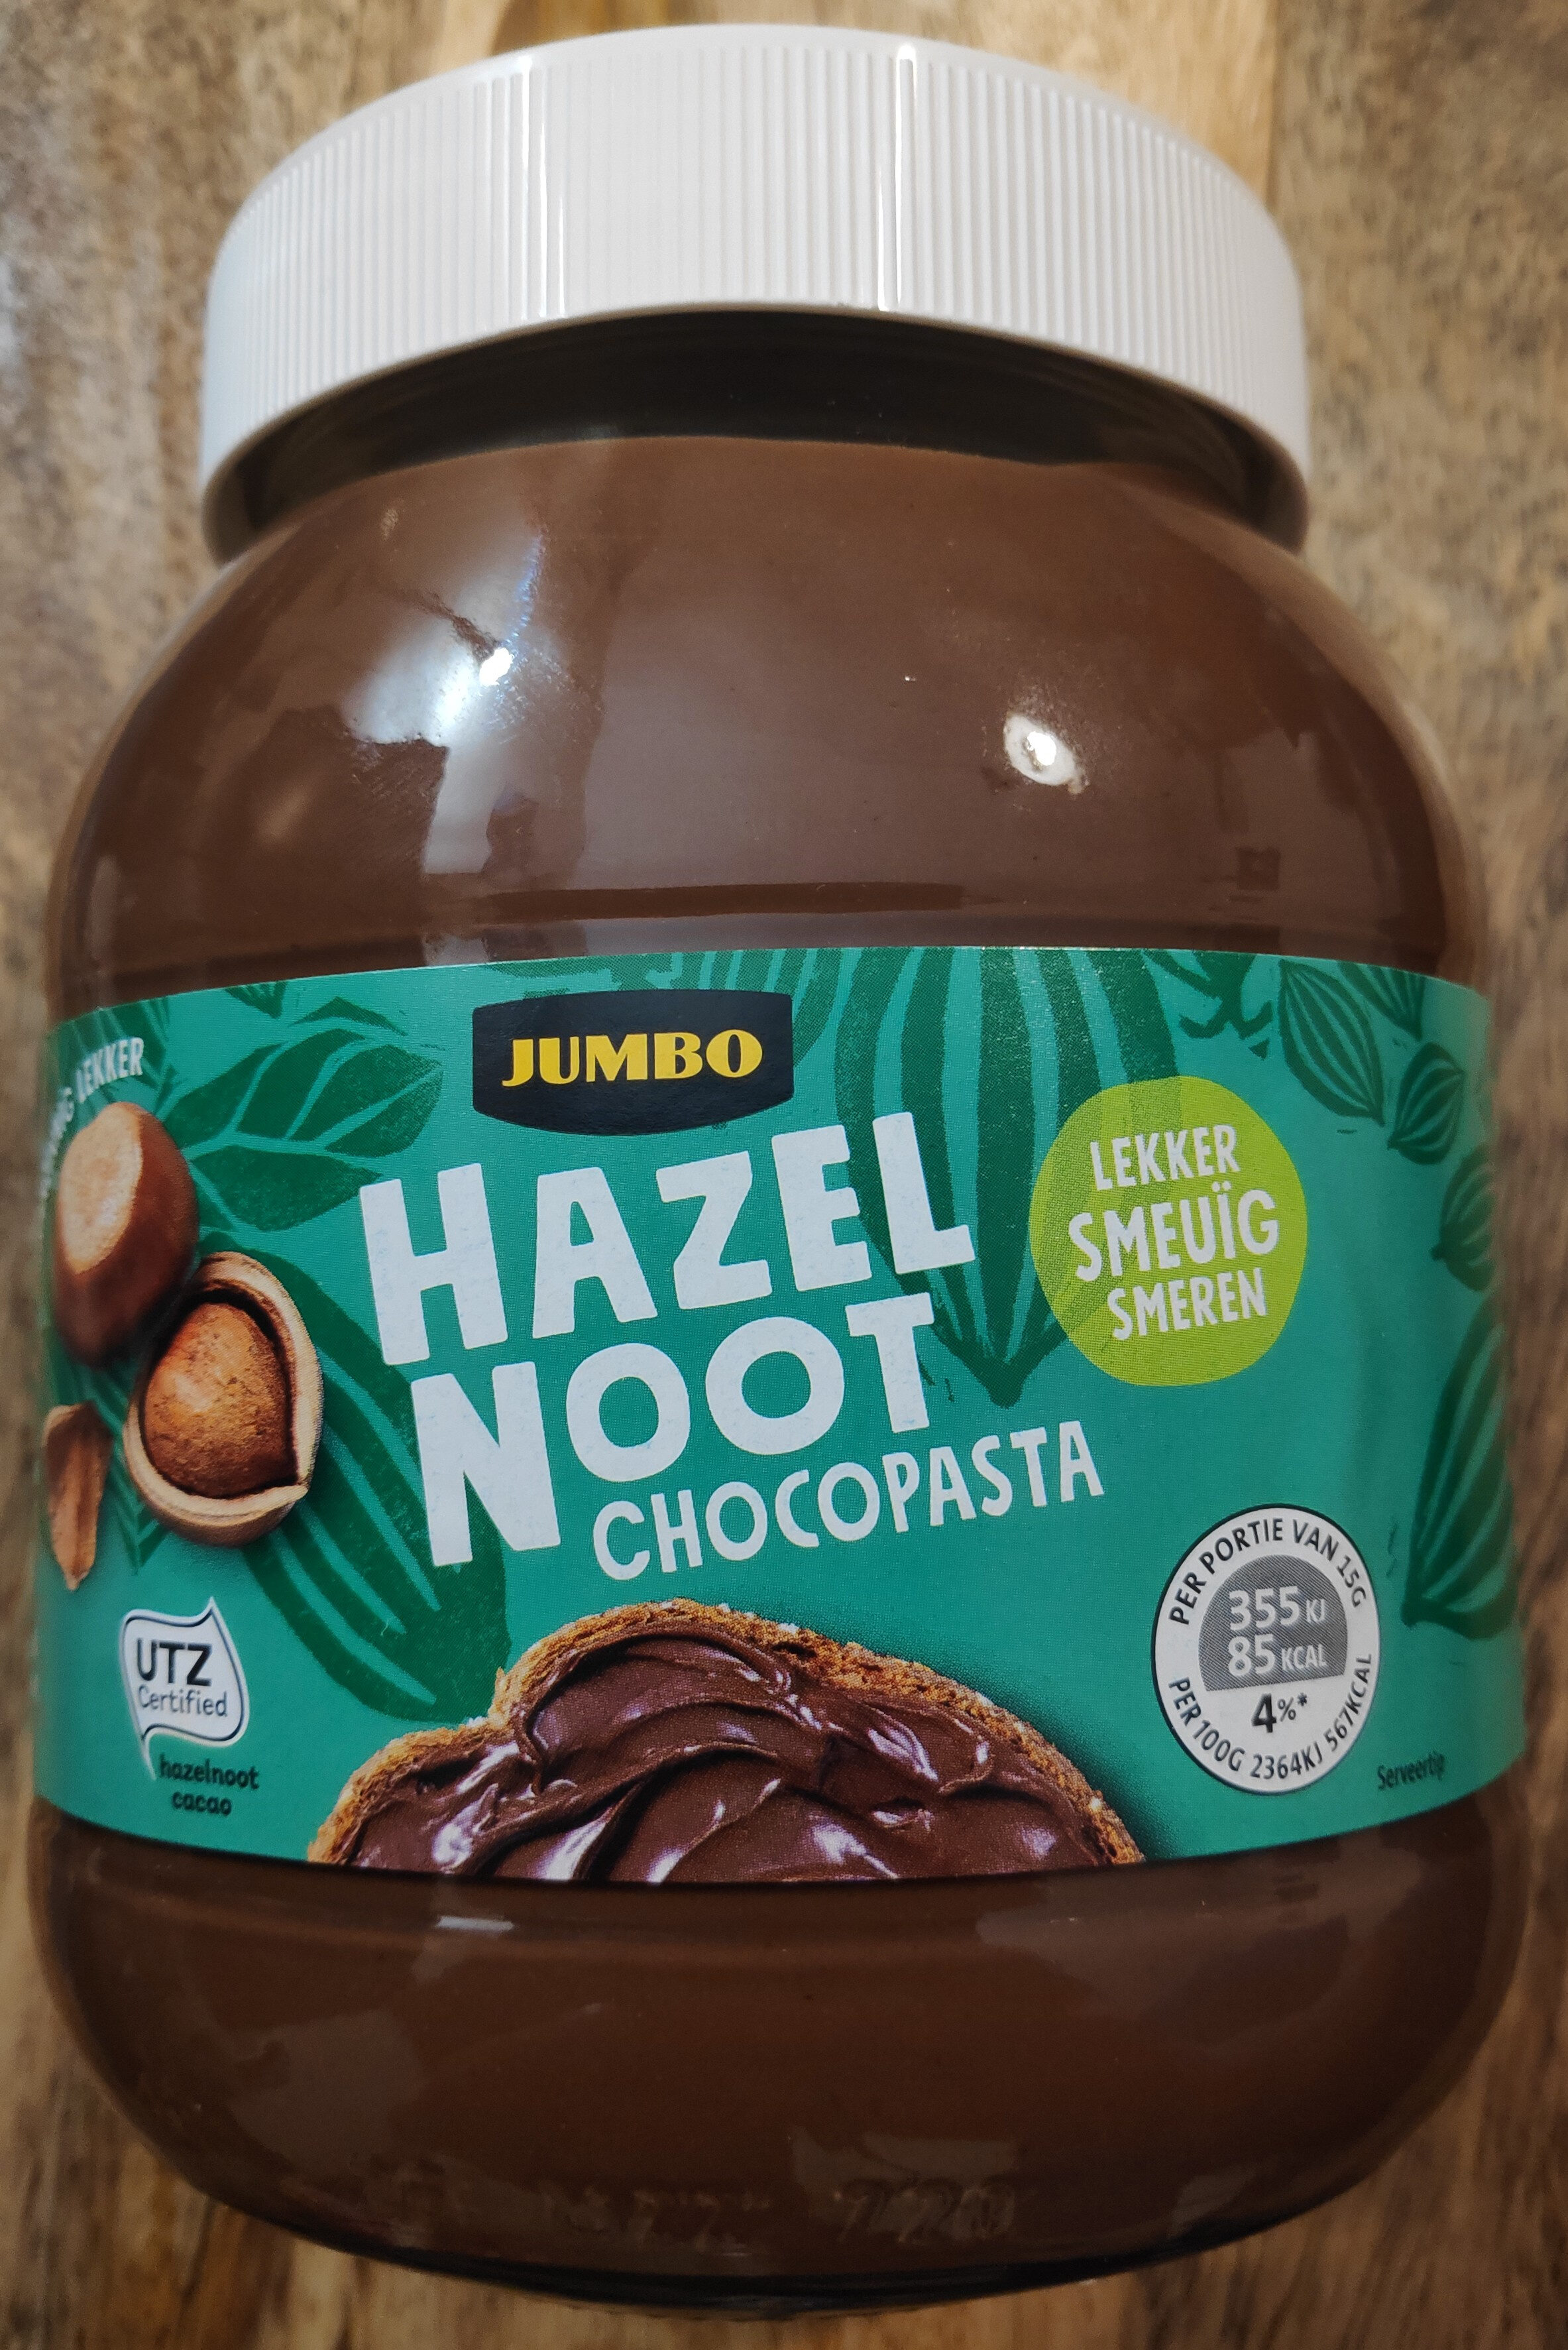 Hazelnoot chocoladepasta - Product